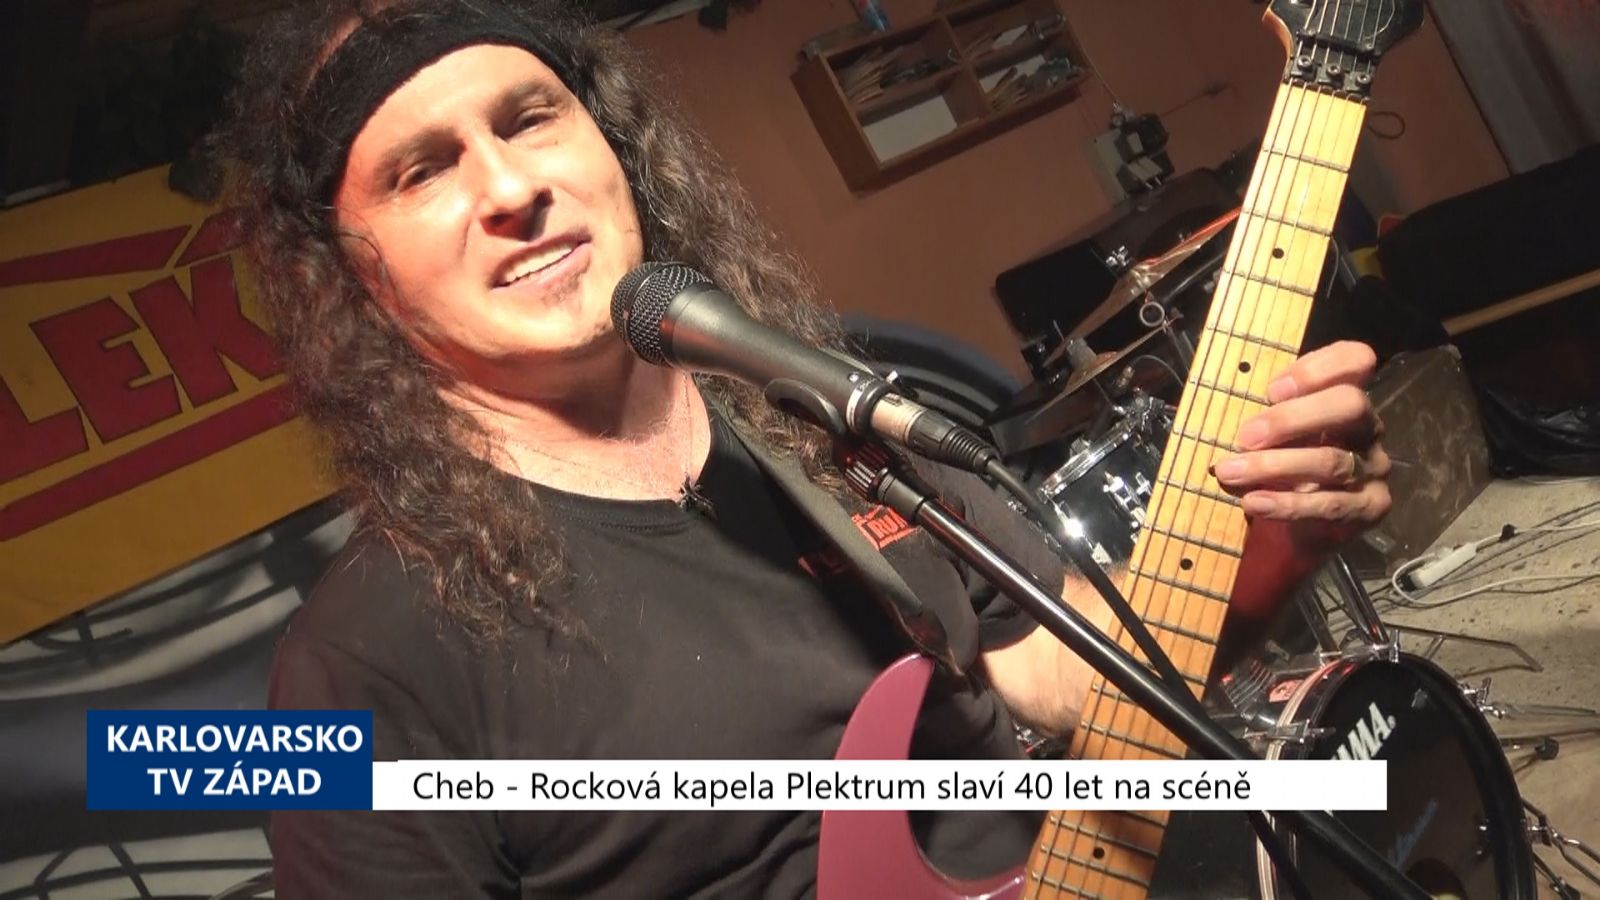 Cheb: Rocková kapela Plektrum slaví 40 let na scéně (TV Západ)